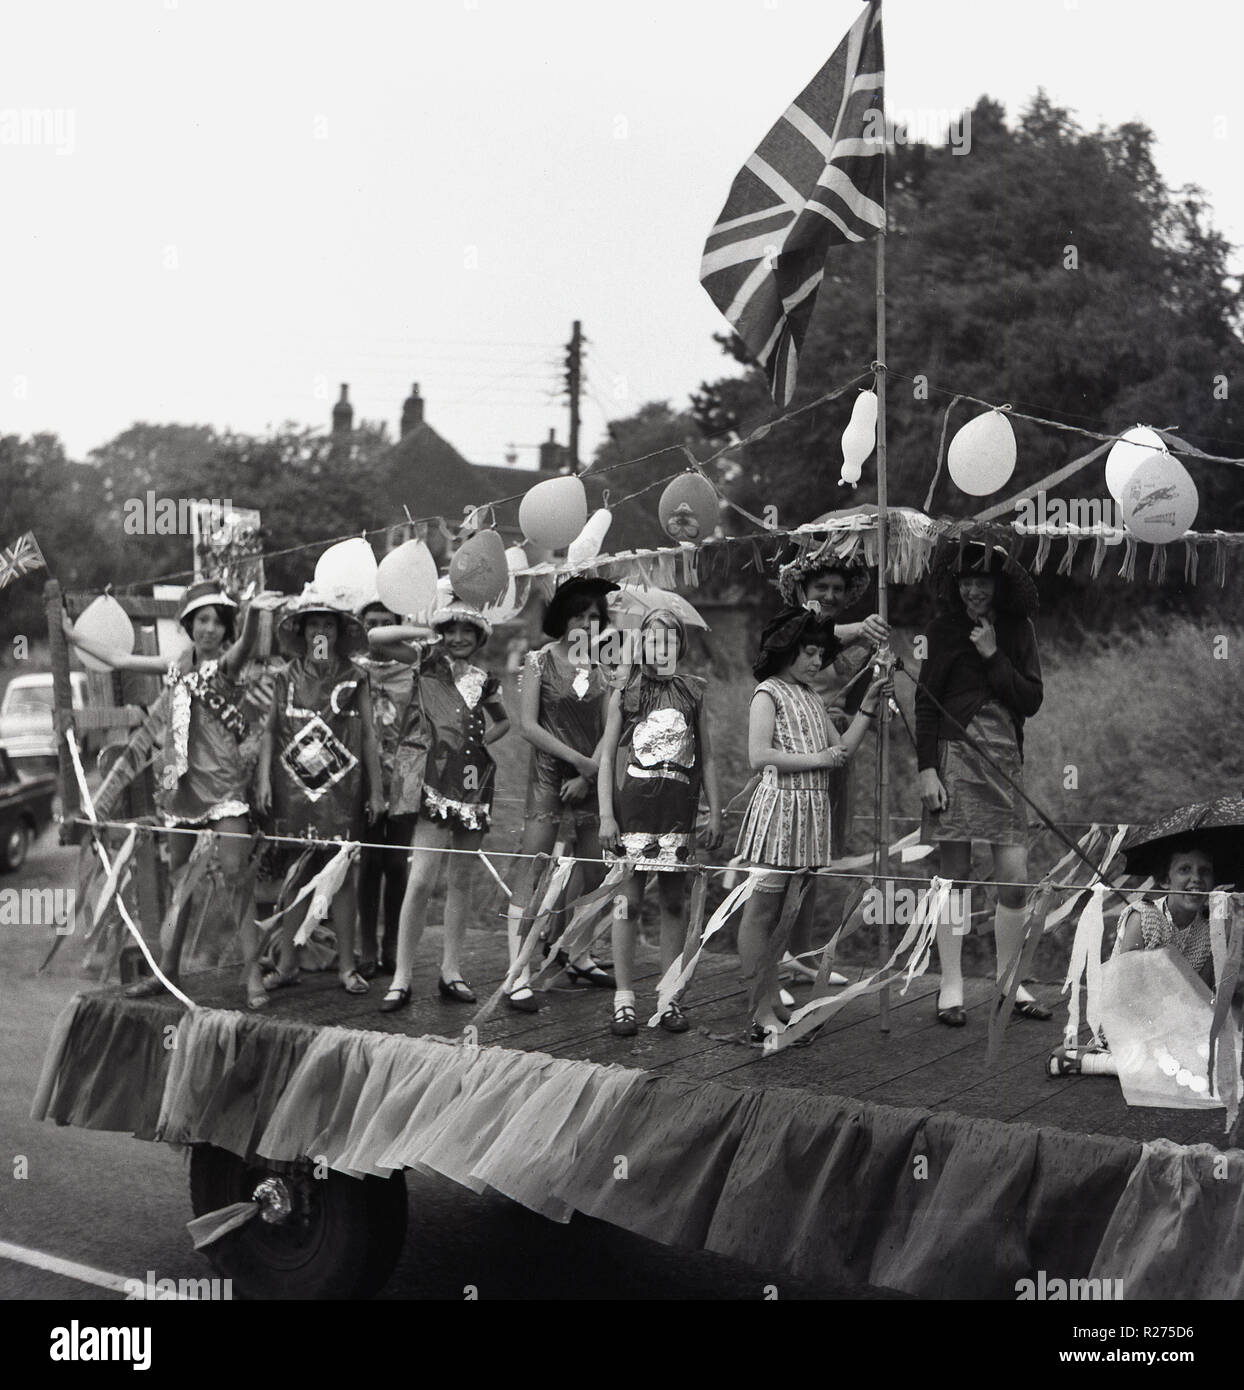 1967, jeunes filles en costumes se tenir sur l'arrière d'un char décoré dans un camion couvert de ballons et Bunting, un Union Jack flag.en tant qu'elles participent dans un village anglais carnaval de rue dans l'Oxfordshire, Angleterre, Royaume-Uni. Banque D'Images